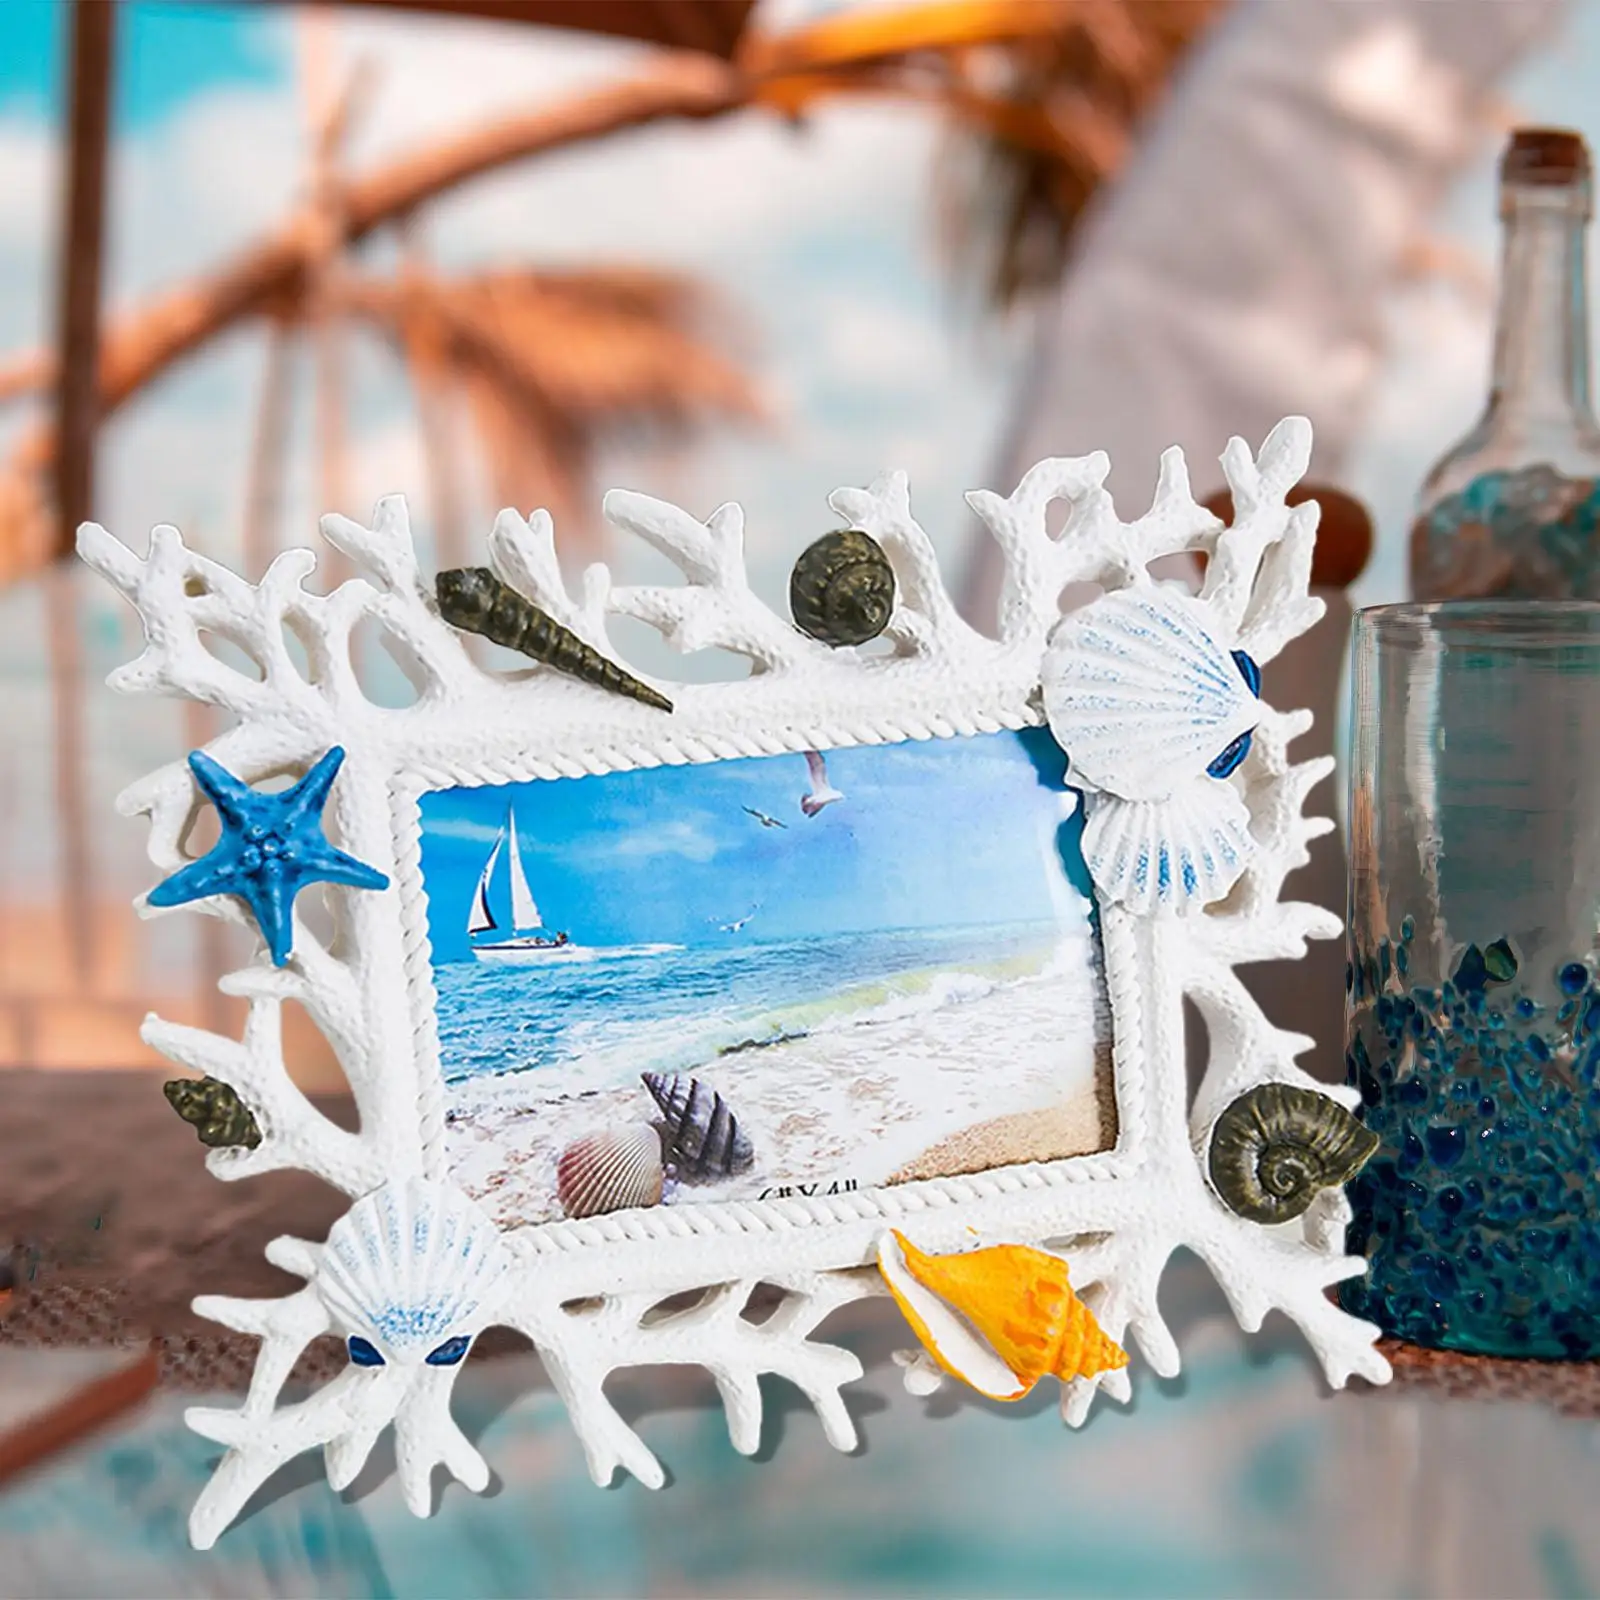 

Фоторамка с морской тематикой, держатель для фотографий, поделки с лодкой для свадебного домашнего декора